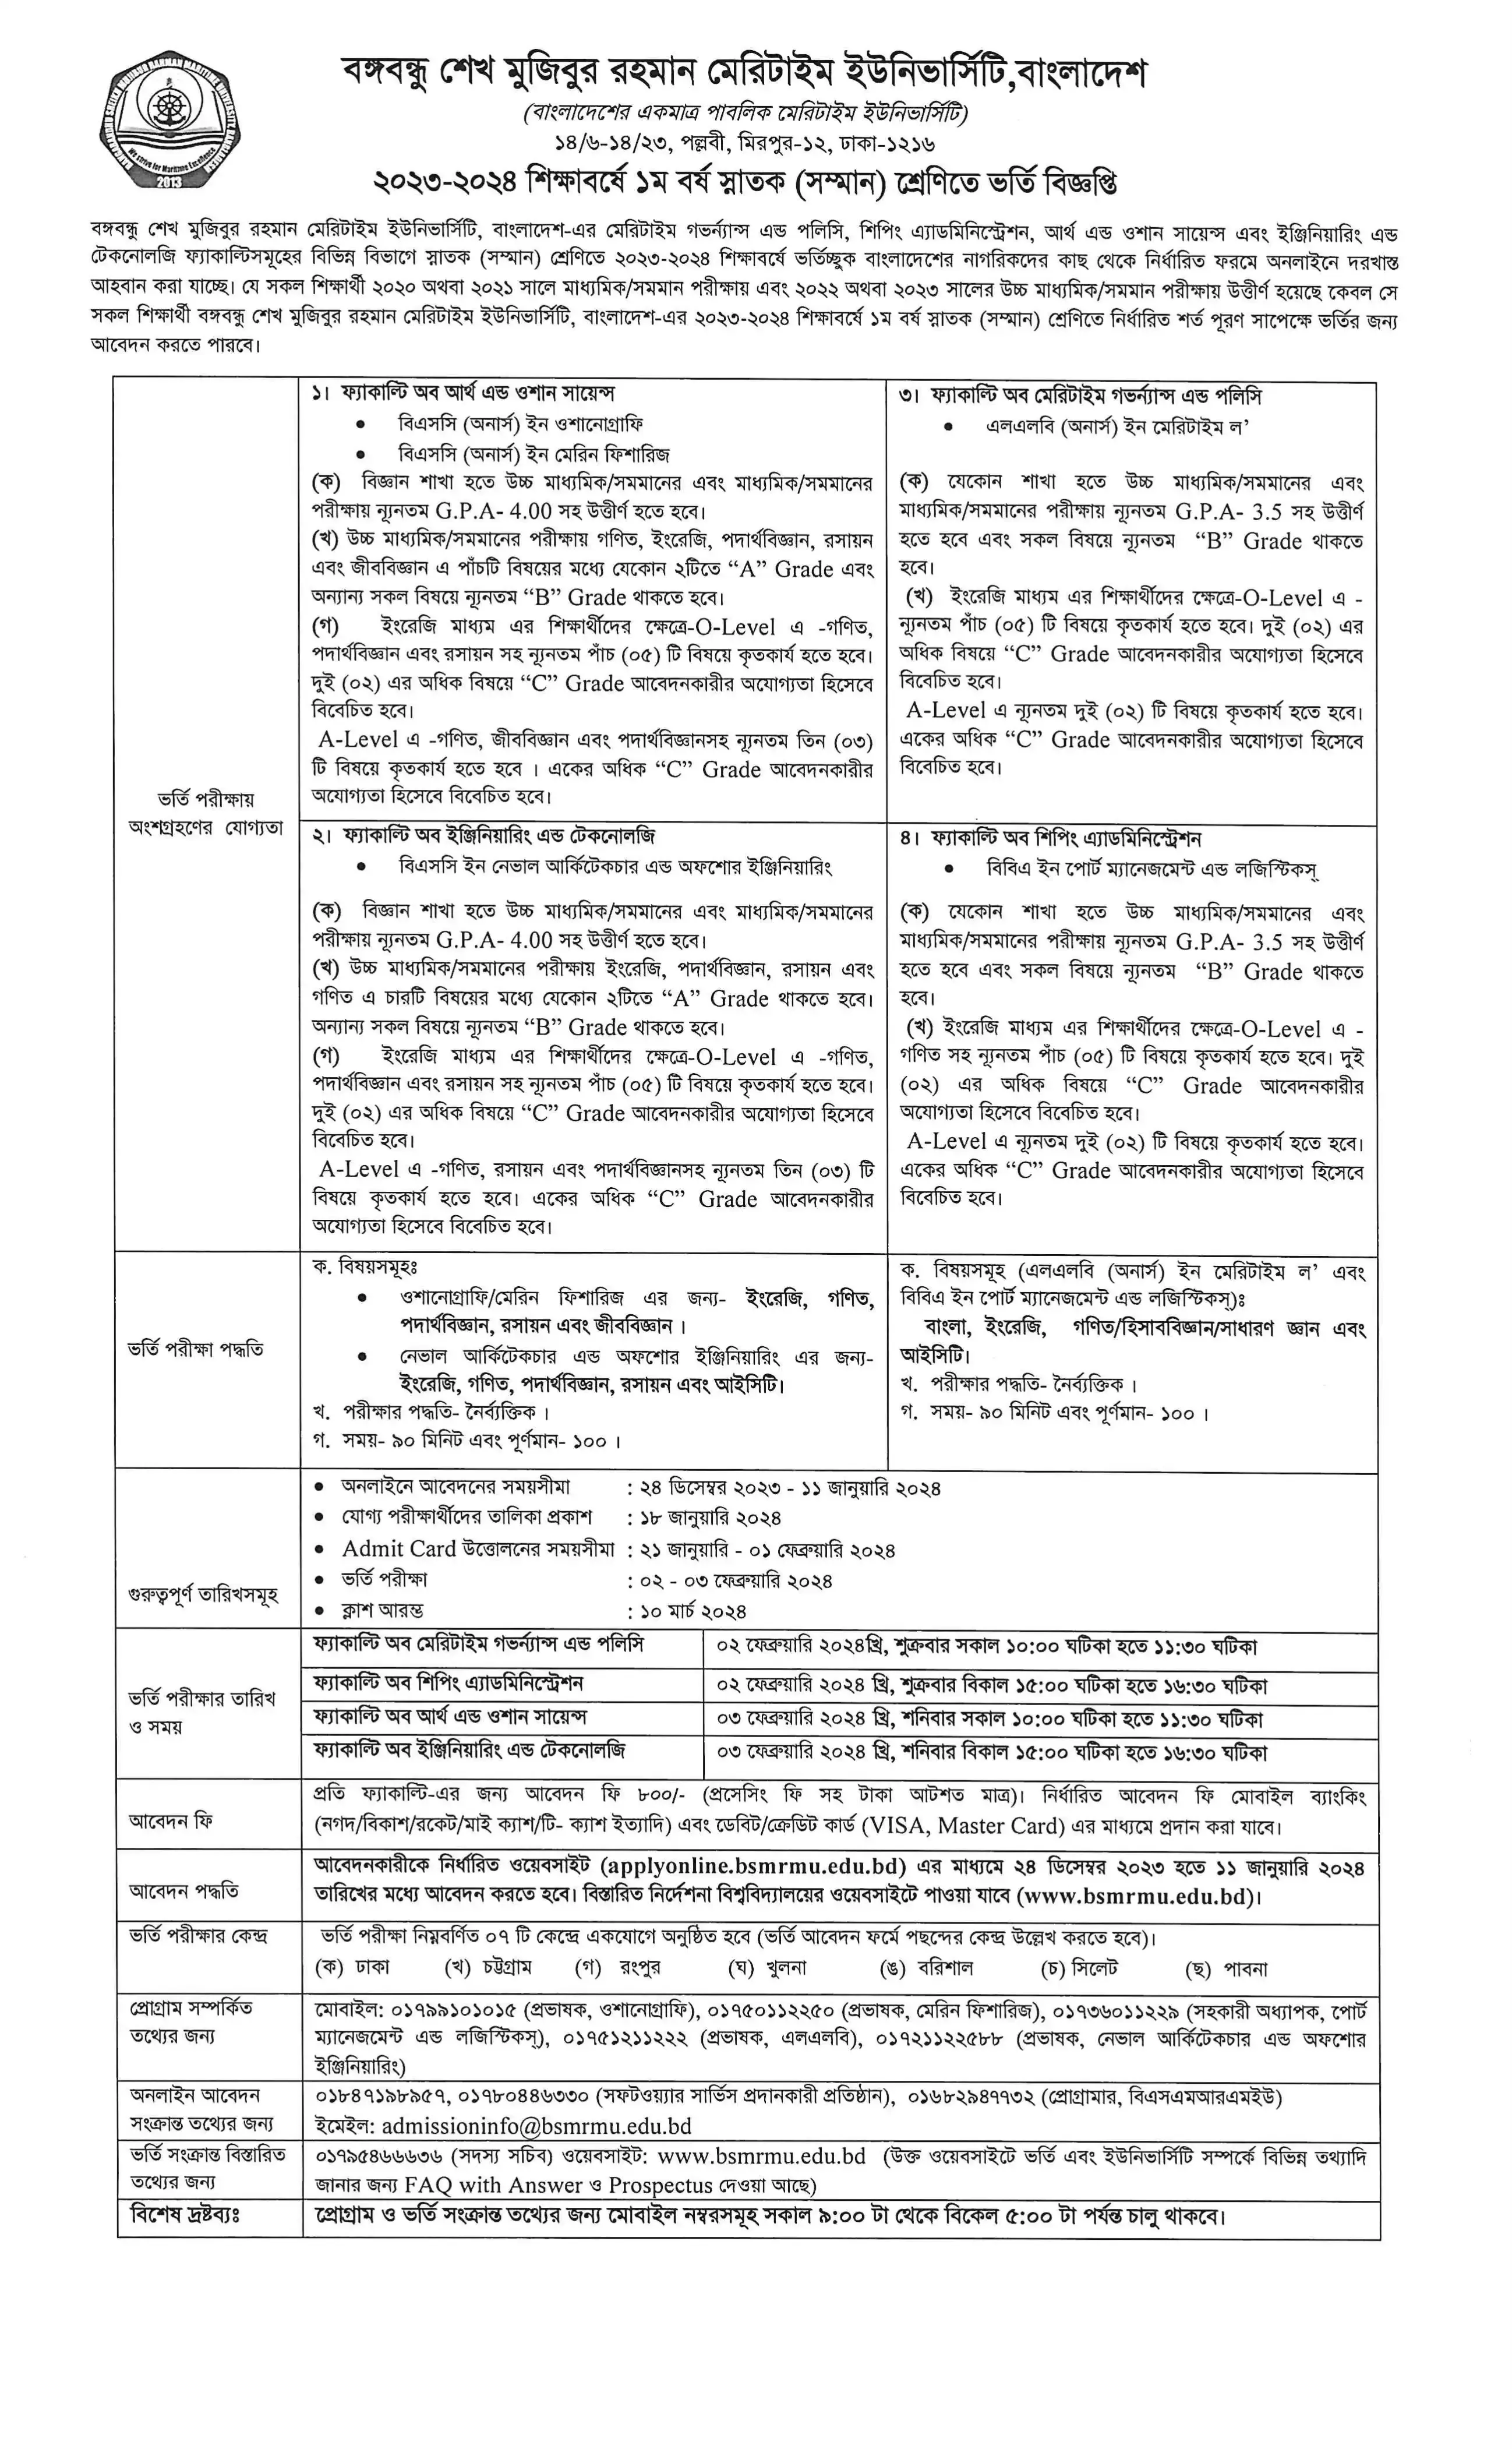 মেরিটাইম বিশ্ববিদ্যালয় ভর্তি ২০২৩-২০২৪ বিজ্ঞপ্তি,সার্কুলার | BSMRMU Admission Circular 2024 | Bangabandhu Maritime University Admission Circular 2024 PDF